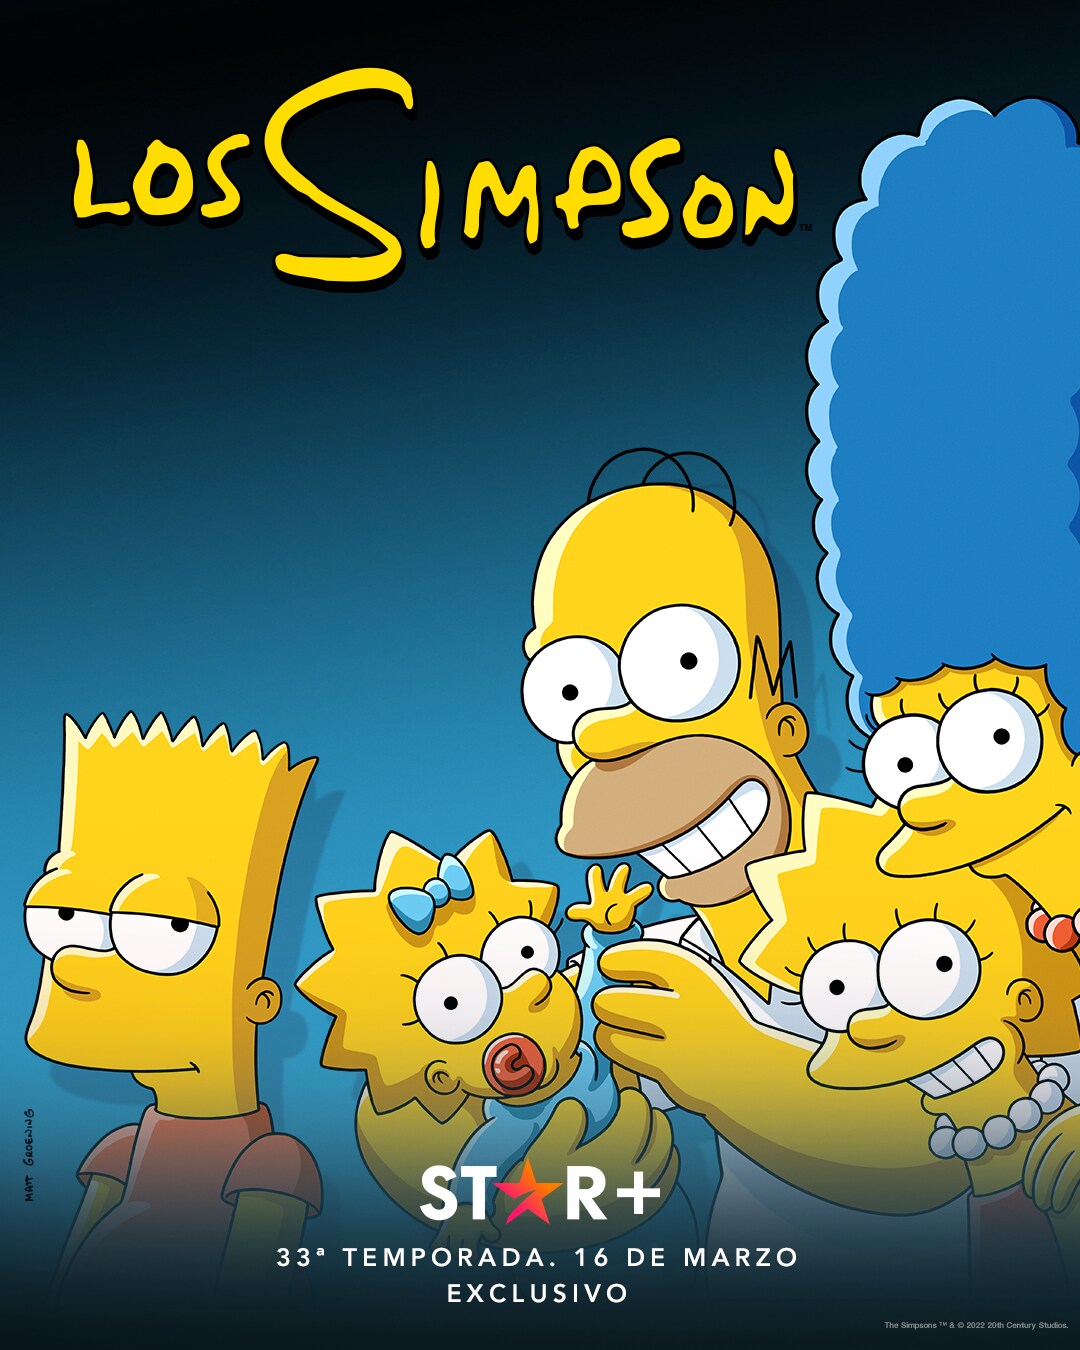 Los Simpson todo lo que se sabe de la nueva temporada en Star+